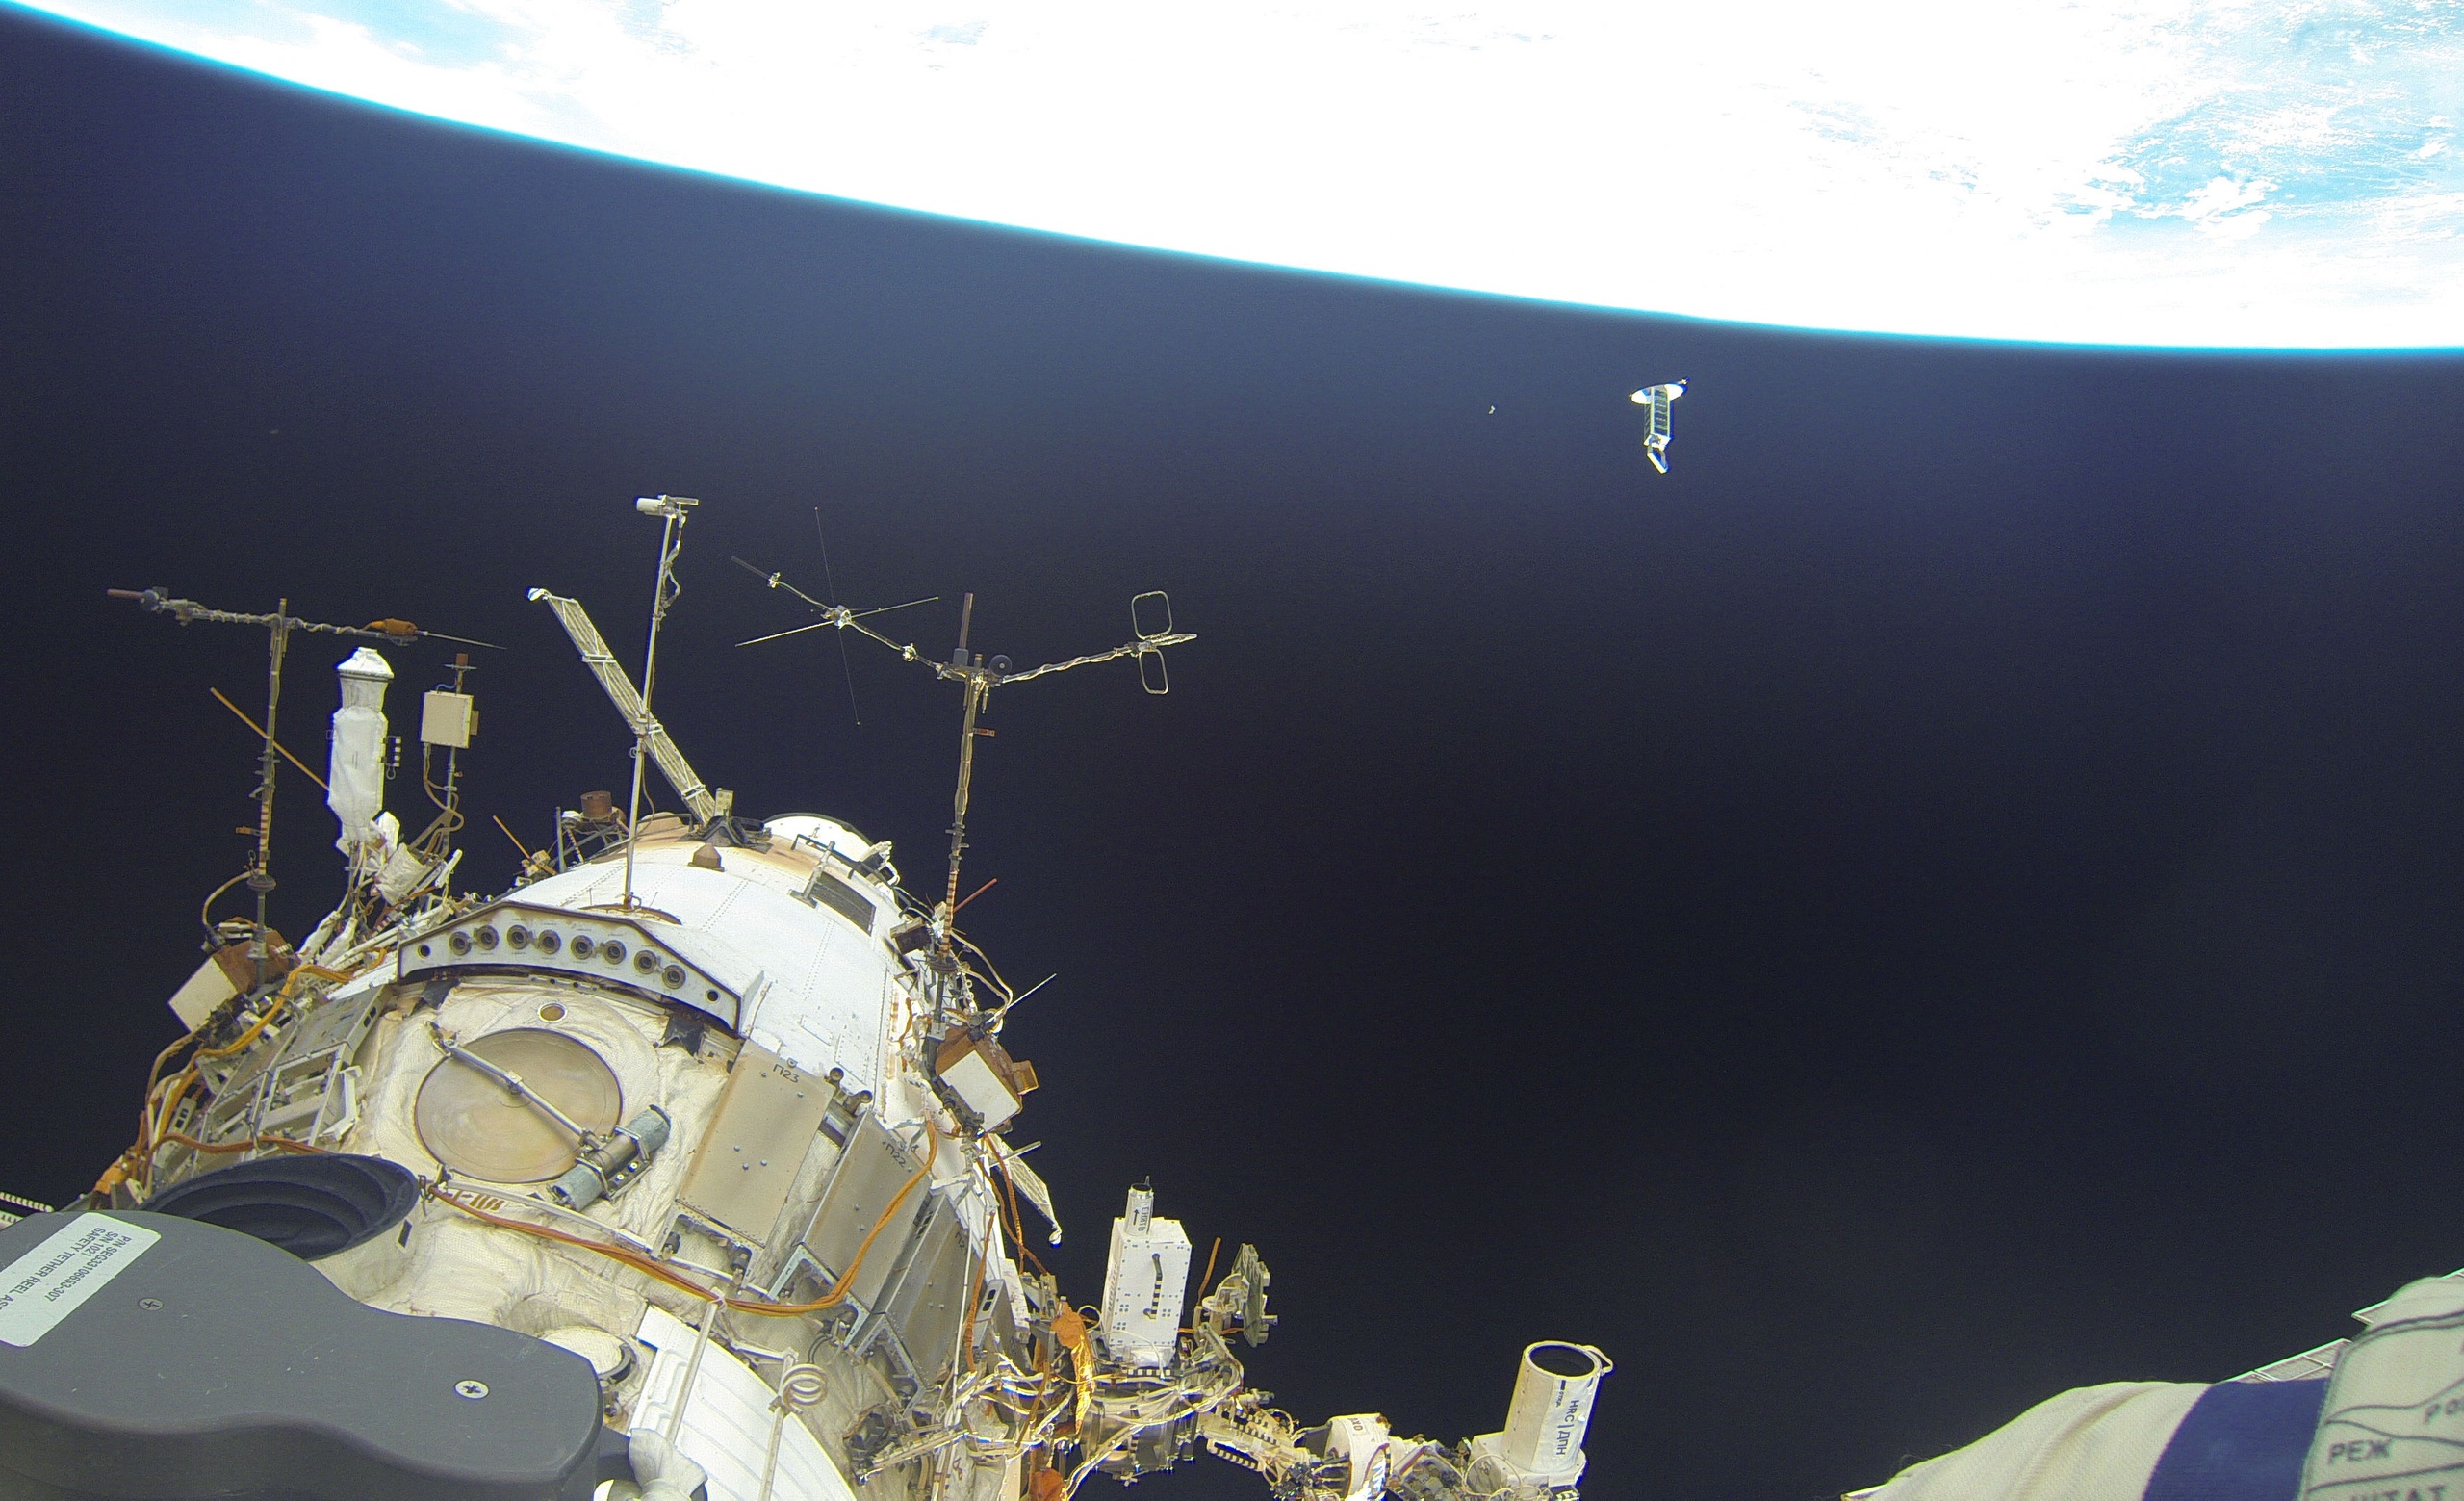 #галерея | Космонавт Олег Артемьев поделился фотографиями выхода в открытый космос